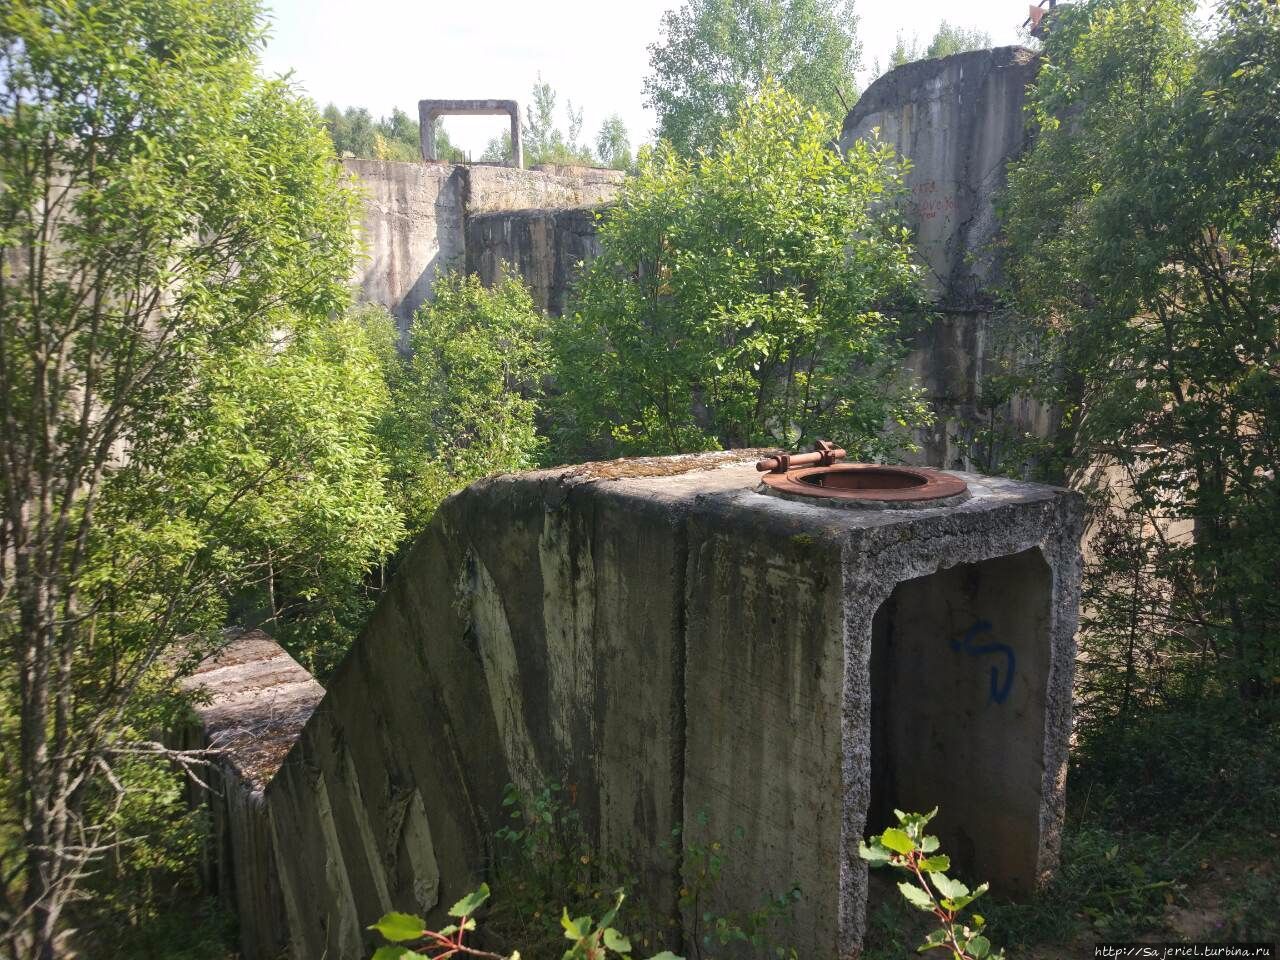 Бункер Вороново / Bunker Voronovo